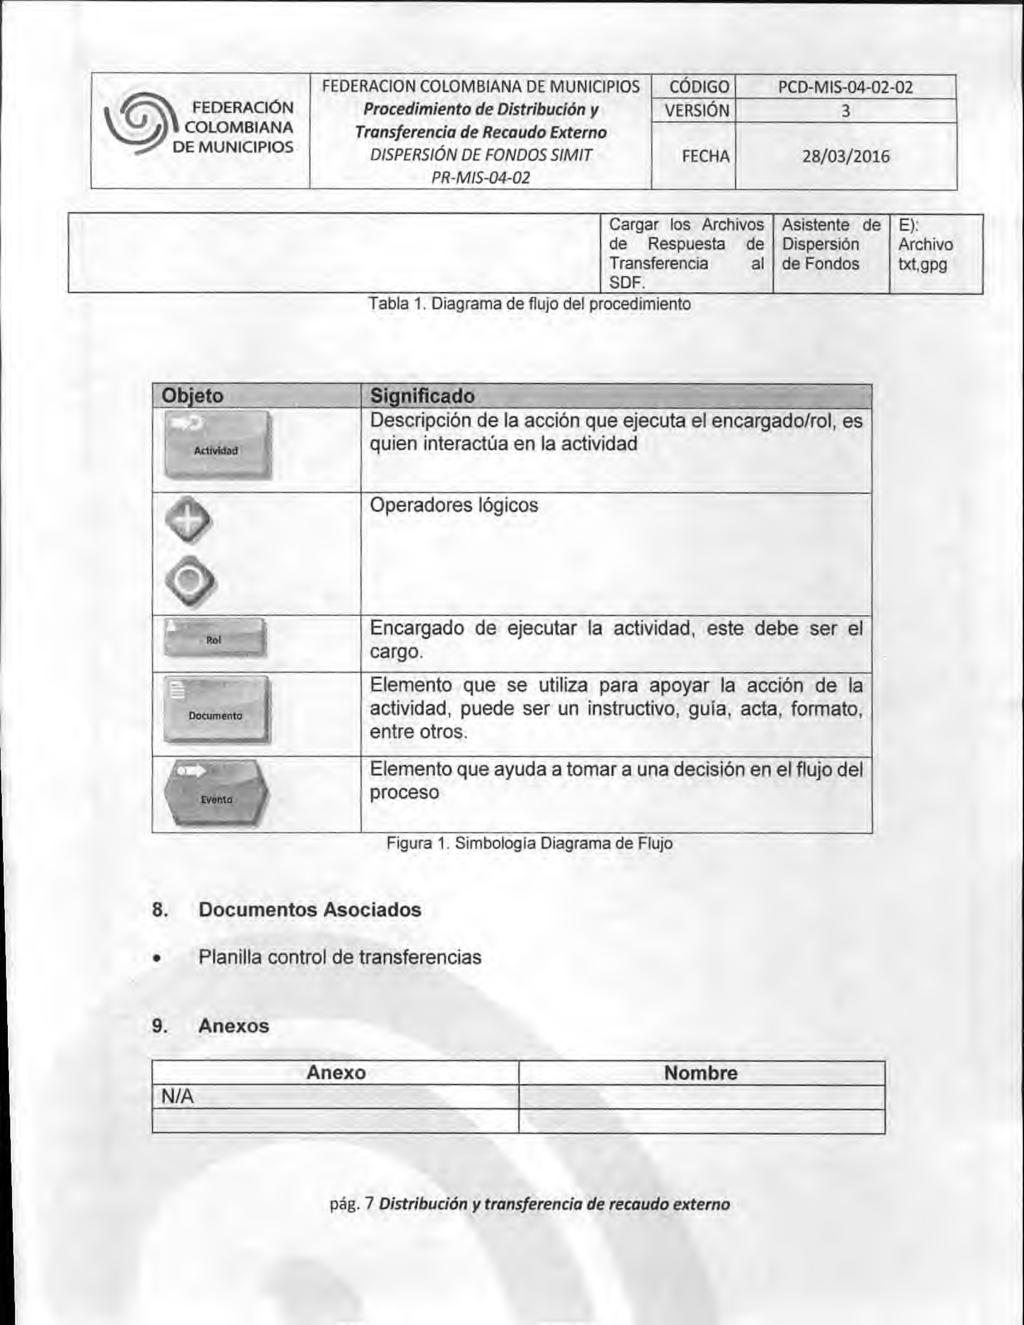 FEDERACION COLOMBIANA CÓDIGO PCD-MIS-04-02-02 DISPERSION DE FONDOS SIMIT FECHA 28/03/2016 Cargar los Archivos Asistente de E): de Respuesta de Dispersión Archivo Transferencia al de Fondos txt,gpg